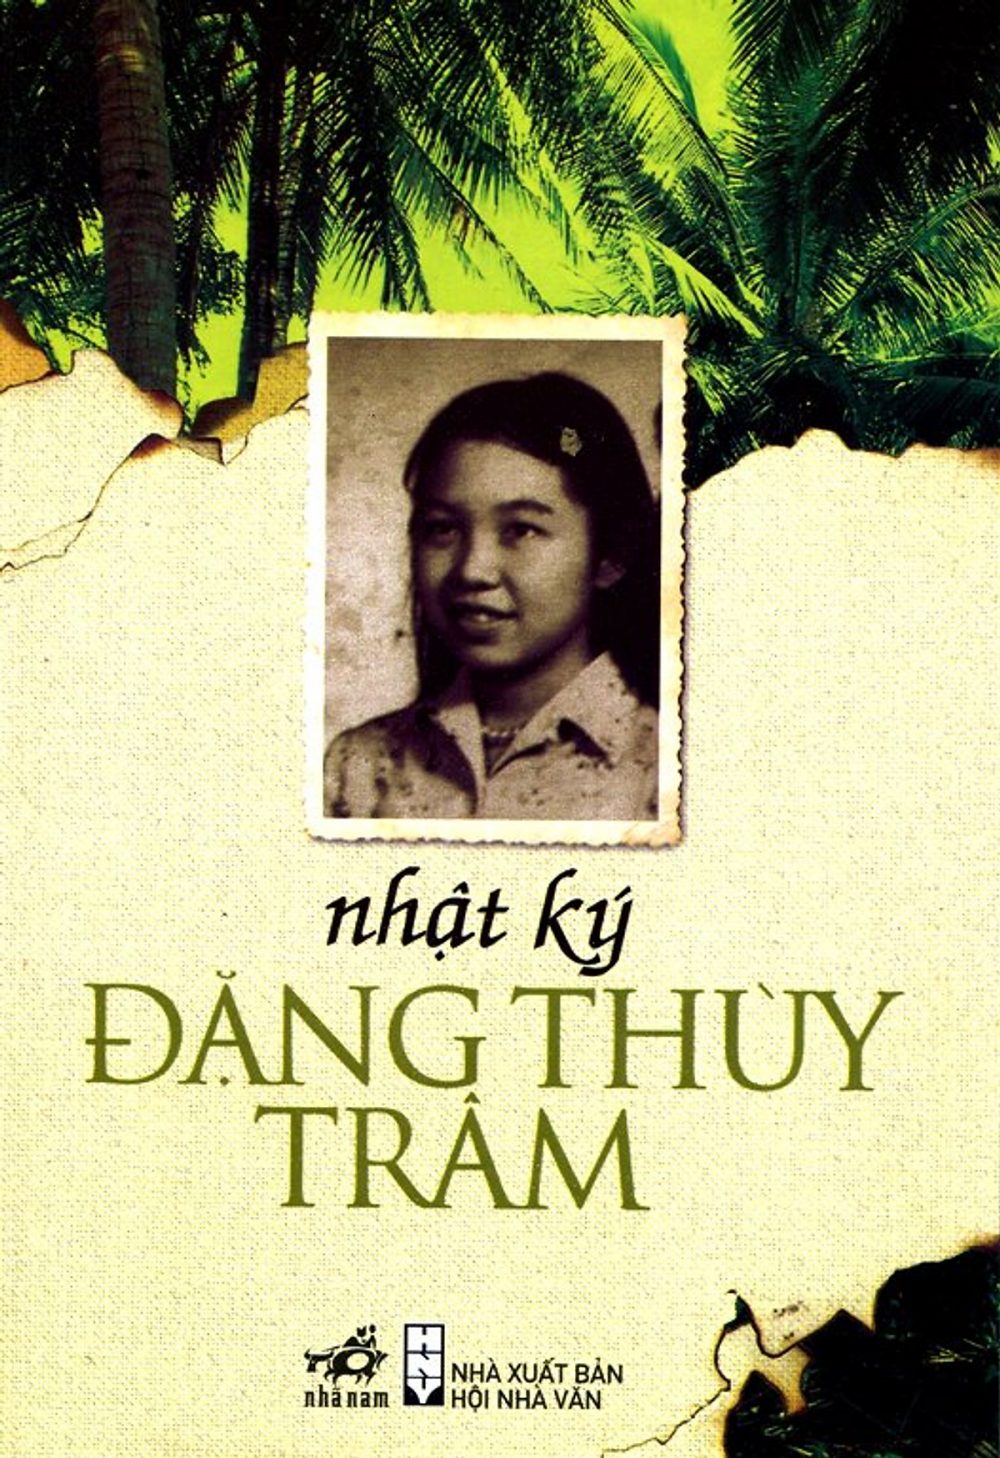 nhat ky dang thuy tram e1599750309337 - Nhật ký Đặng Thùy Trâm và những nỗi đau của chiến tranh